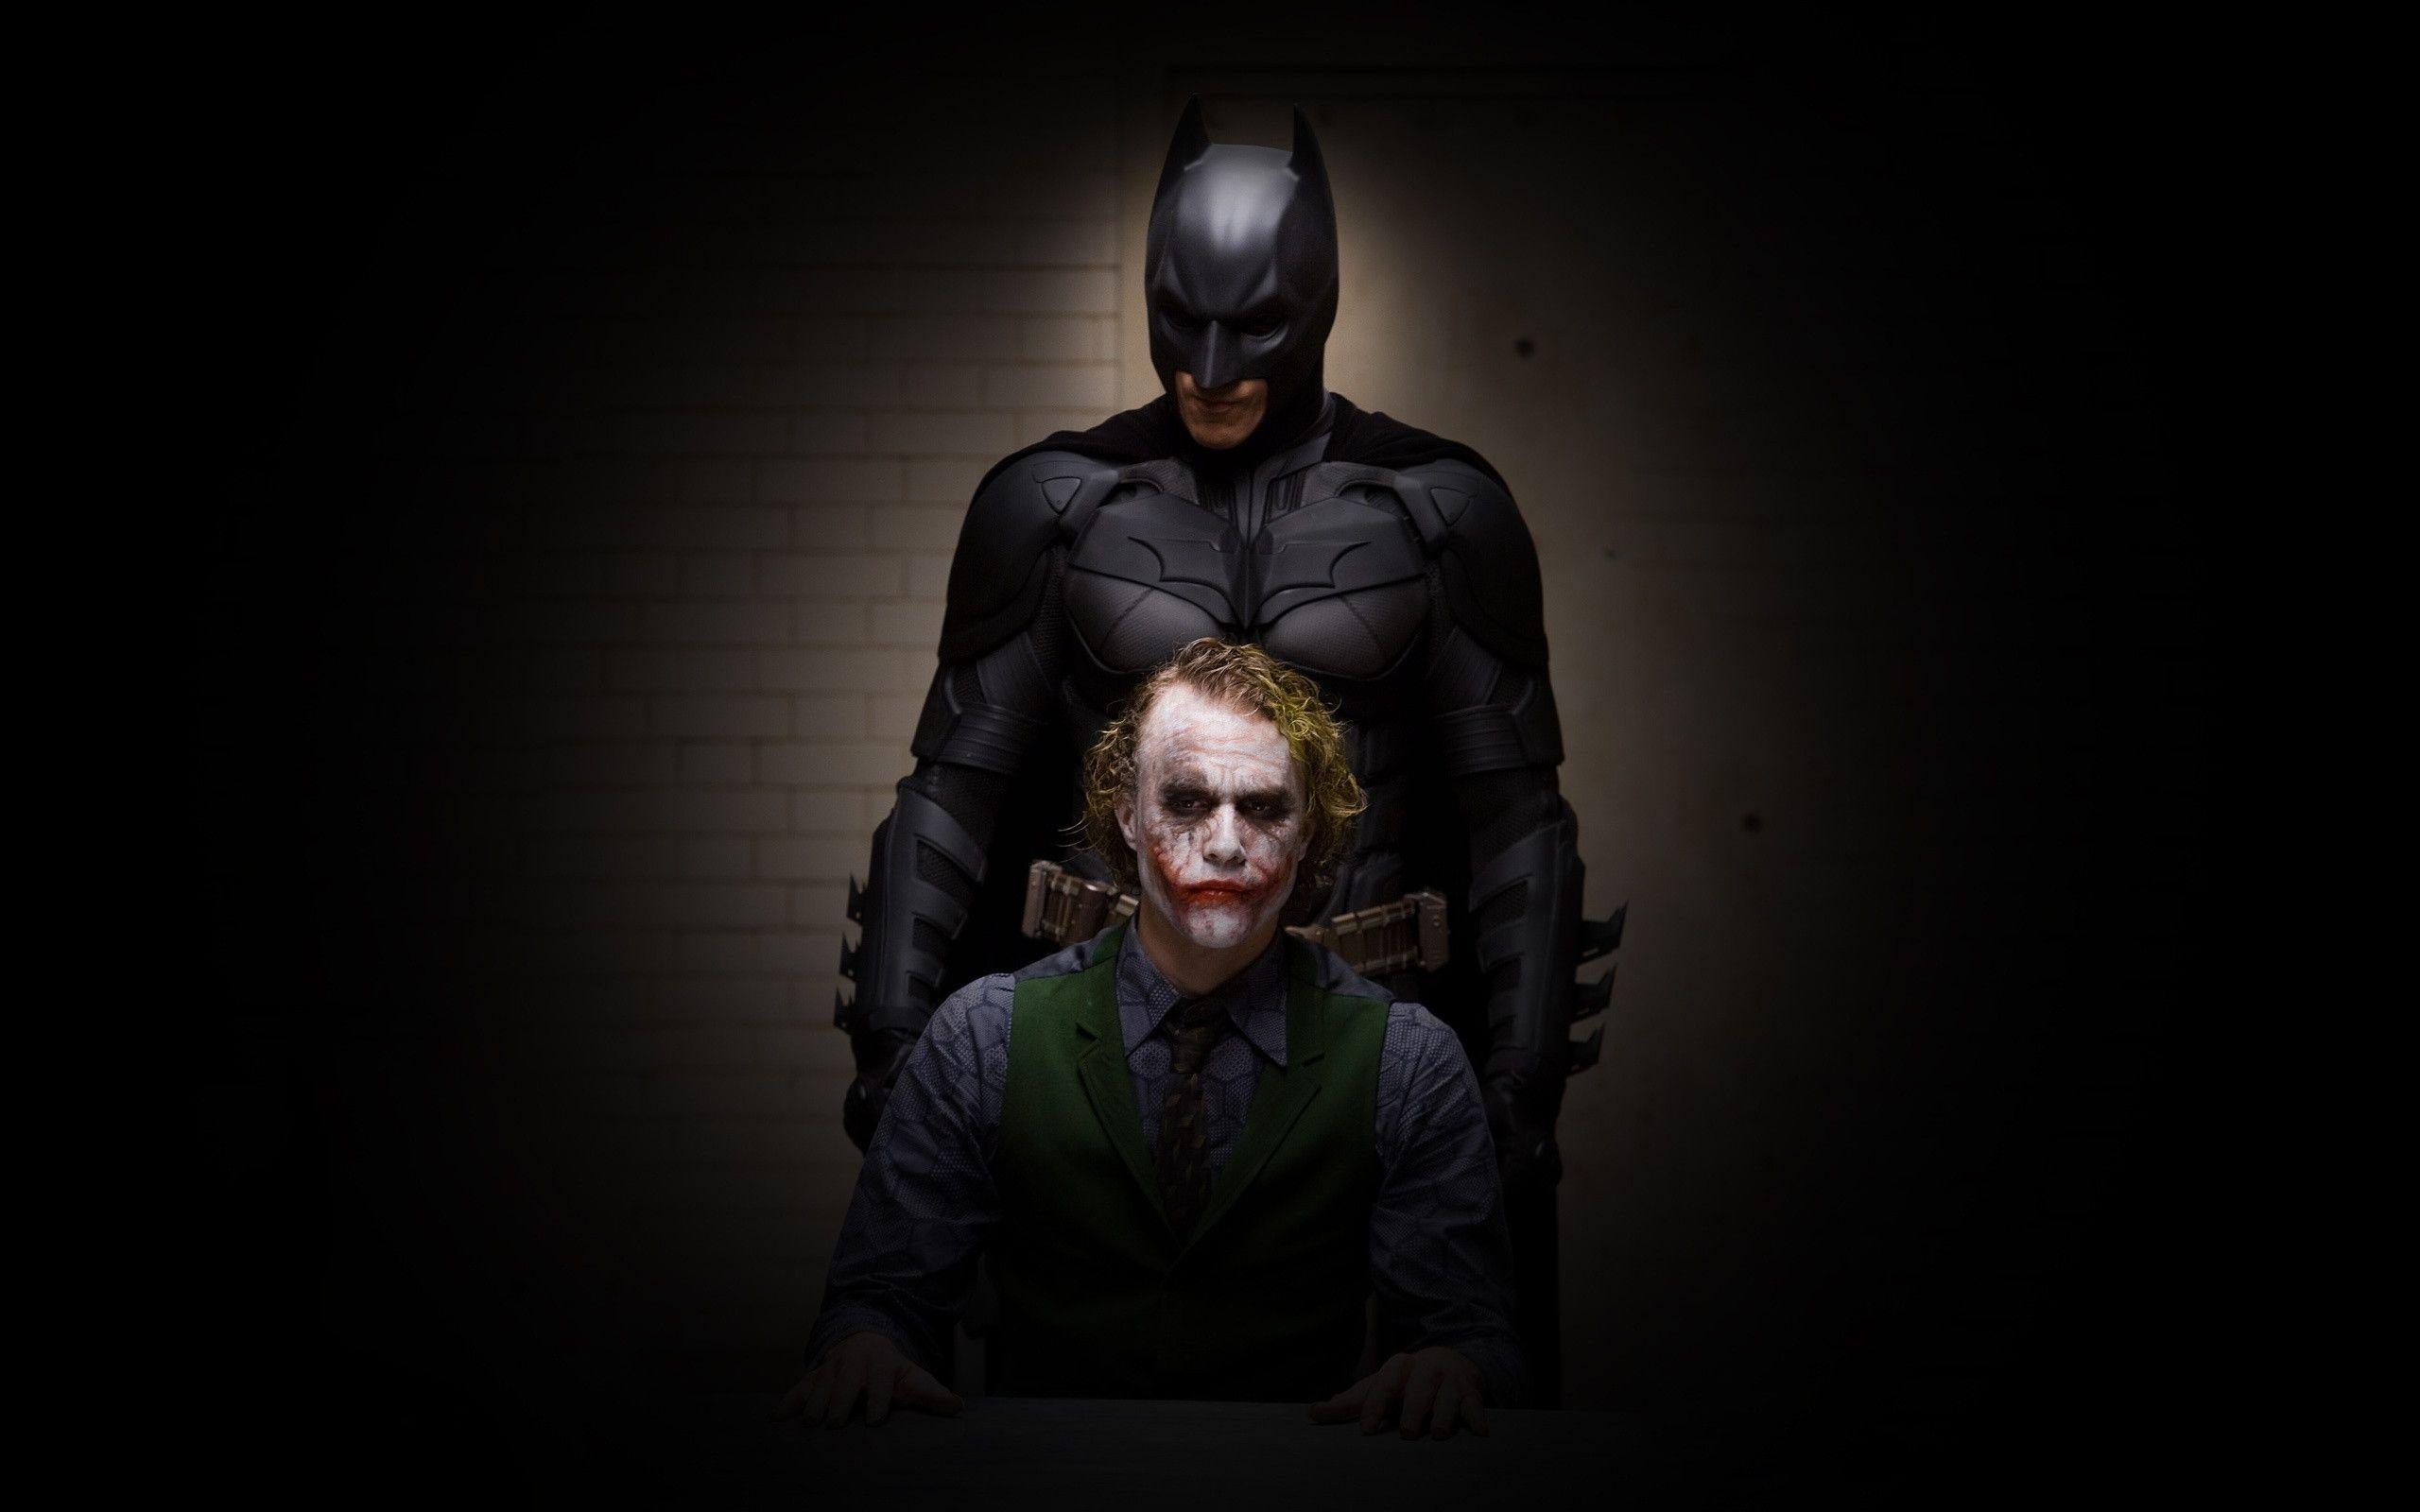 Wallpaper For > Batman The Dark Knight Joker Wallpaper